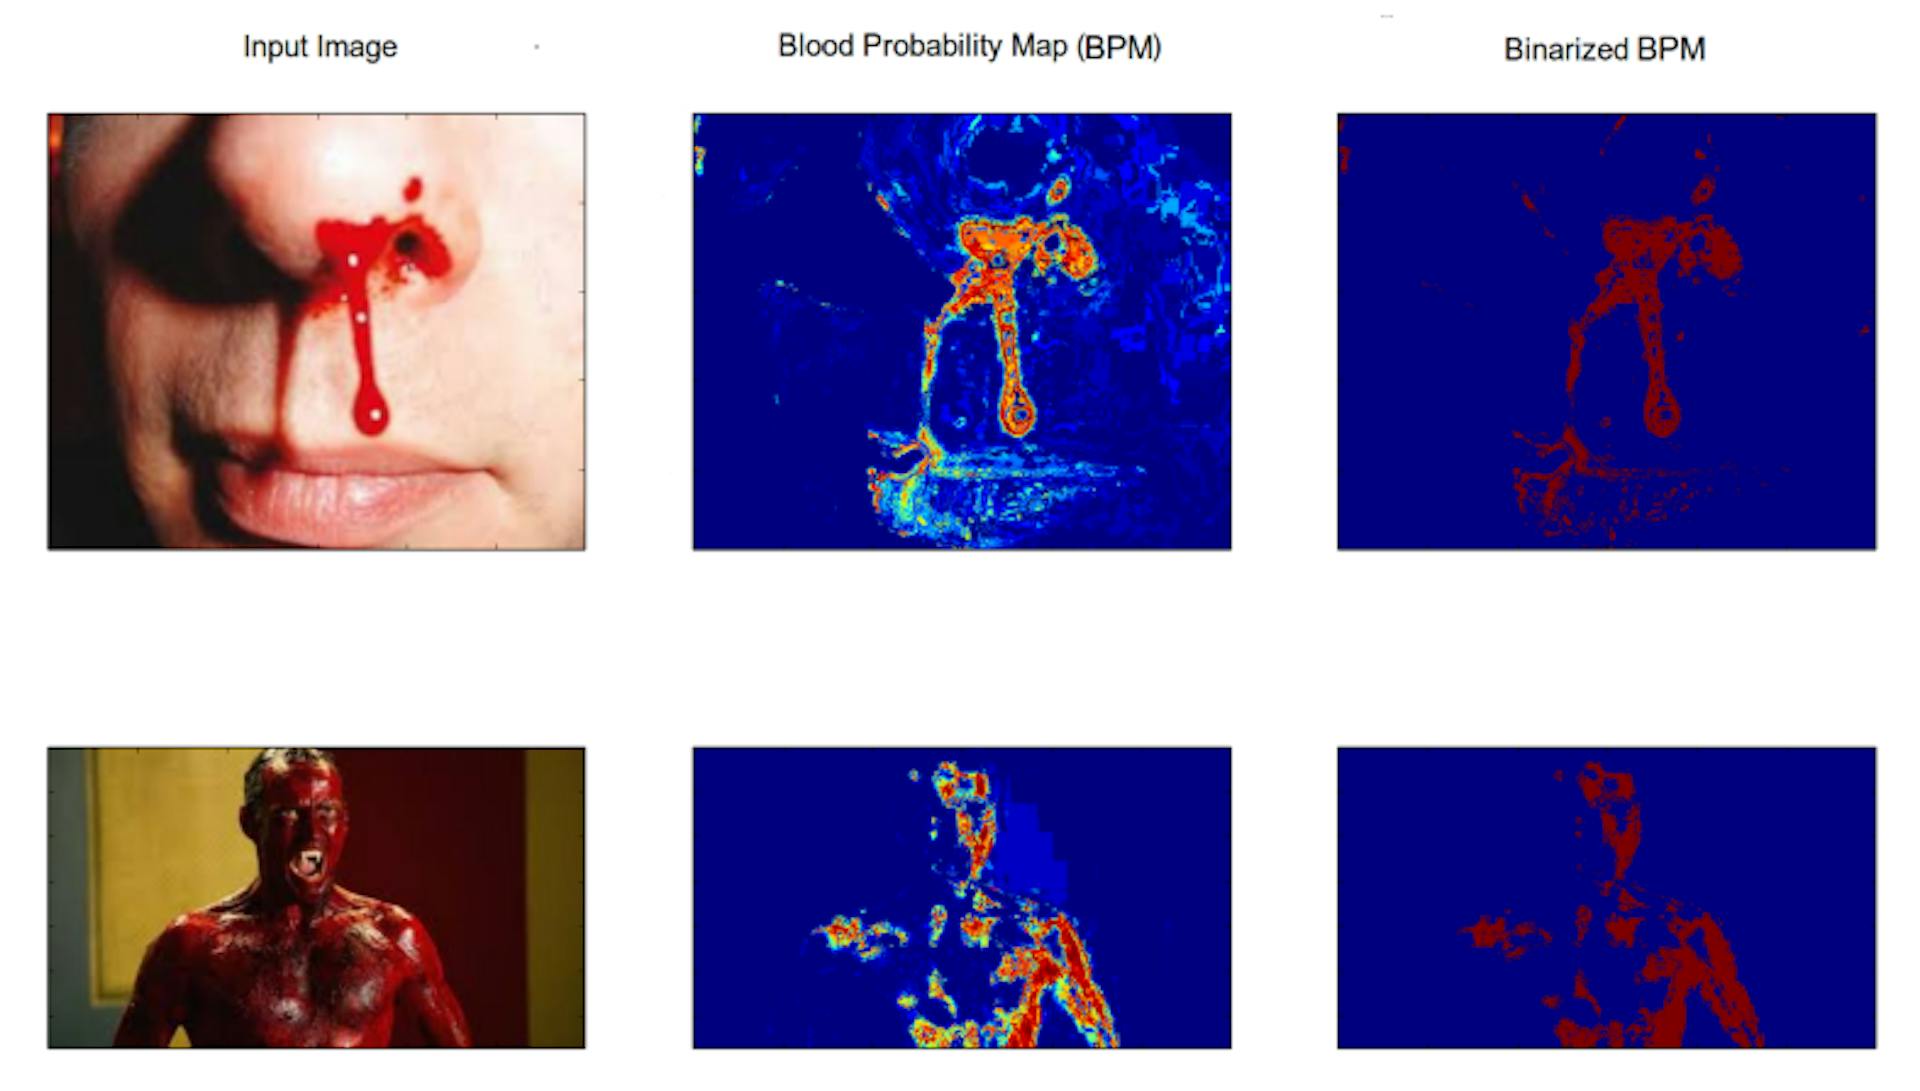 그림 3.4: 생성된 혈액 모델의 혈액 검출 성능을 보여주는 그림. 첫 번째 열에는 입력 이미지가 있고, 두 번째 열에는 혈액 확률 맵이 있으며, 마지막 열에는 이진화된 혈액 확률 맵이 있습니다.